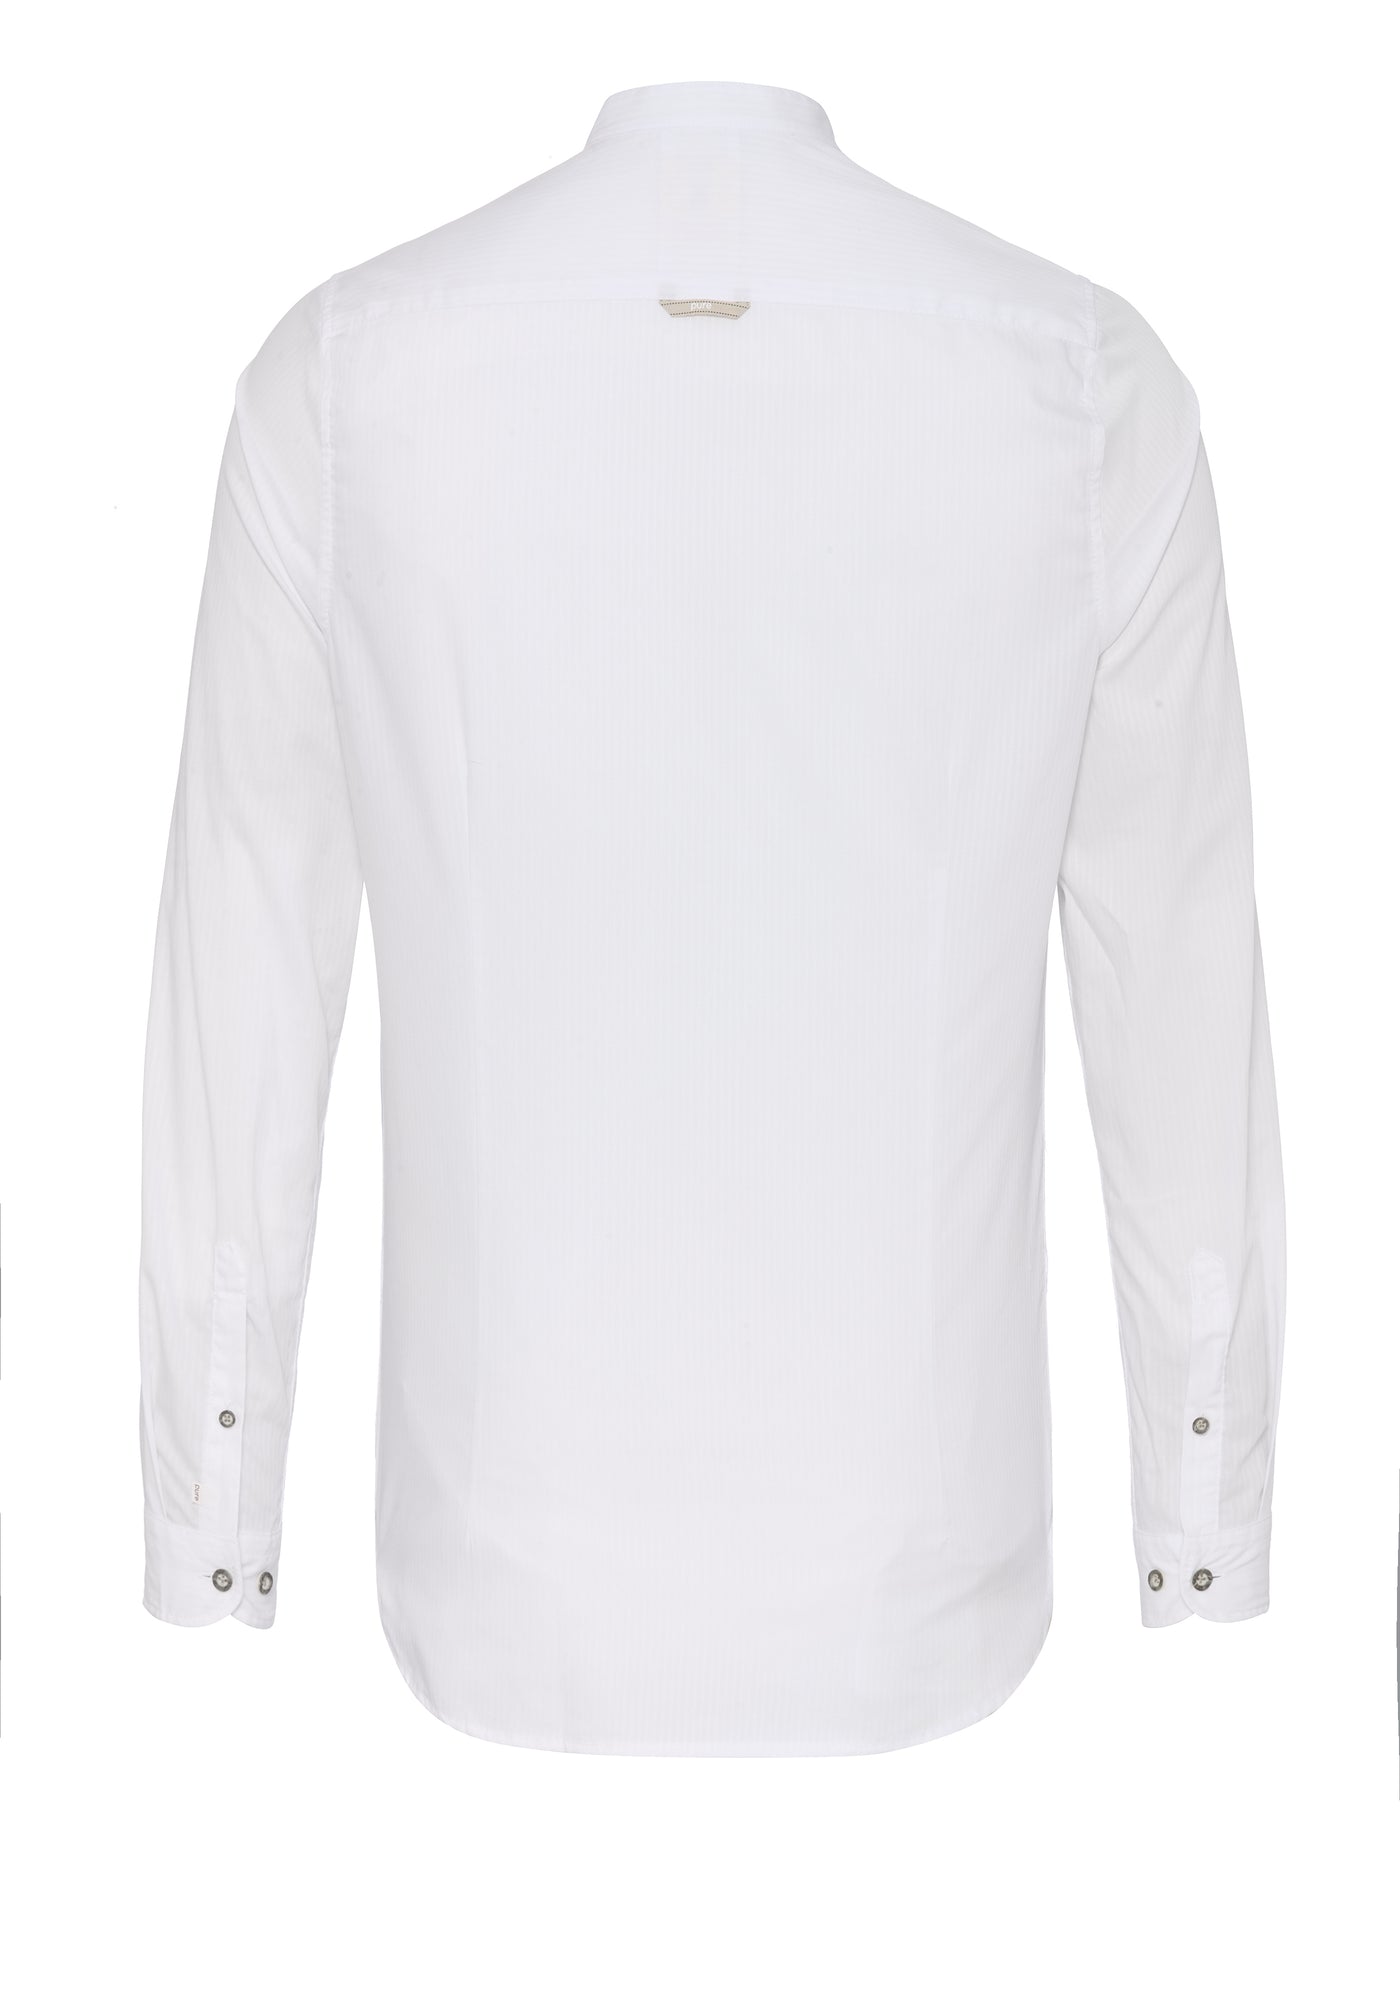 5013-21692 - Tracht Hemd slim fit - weiß